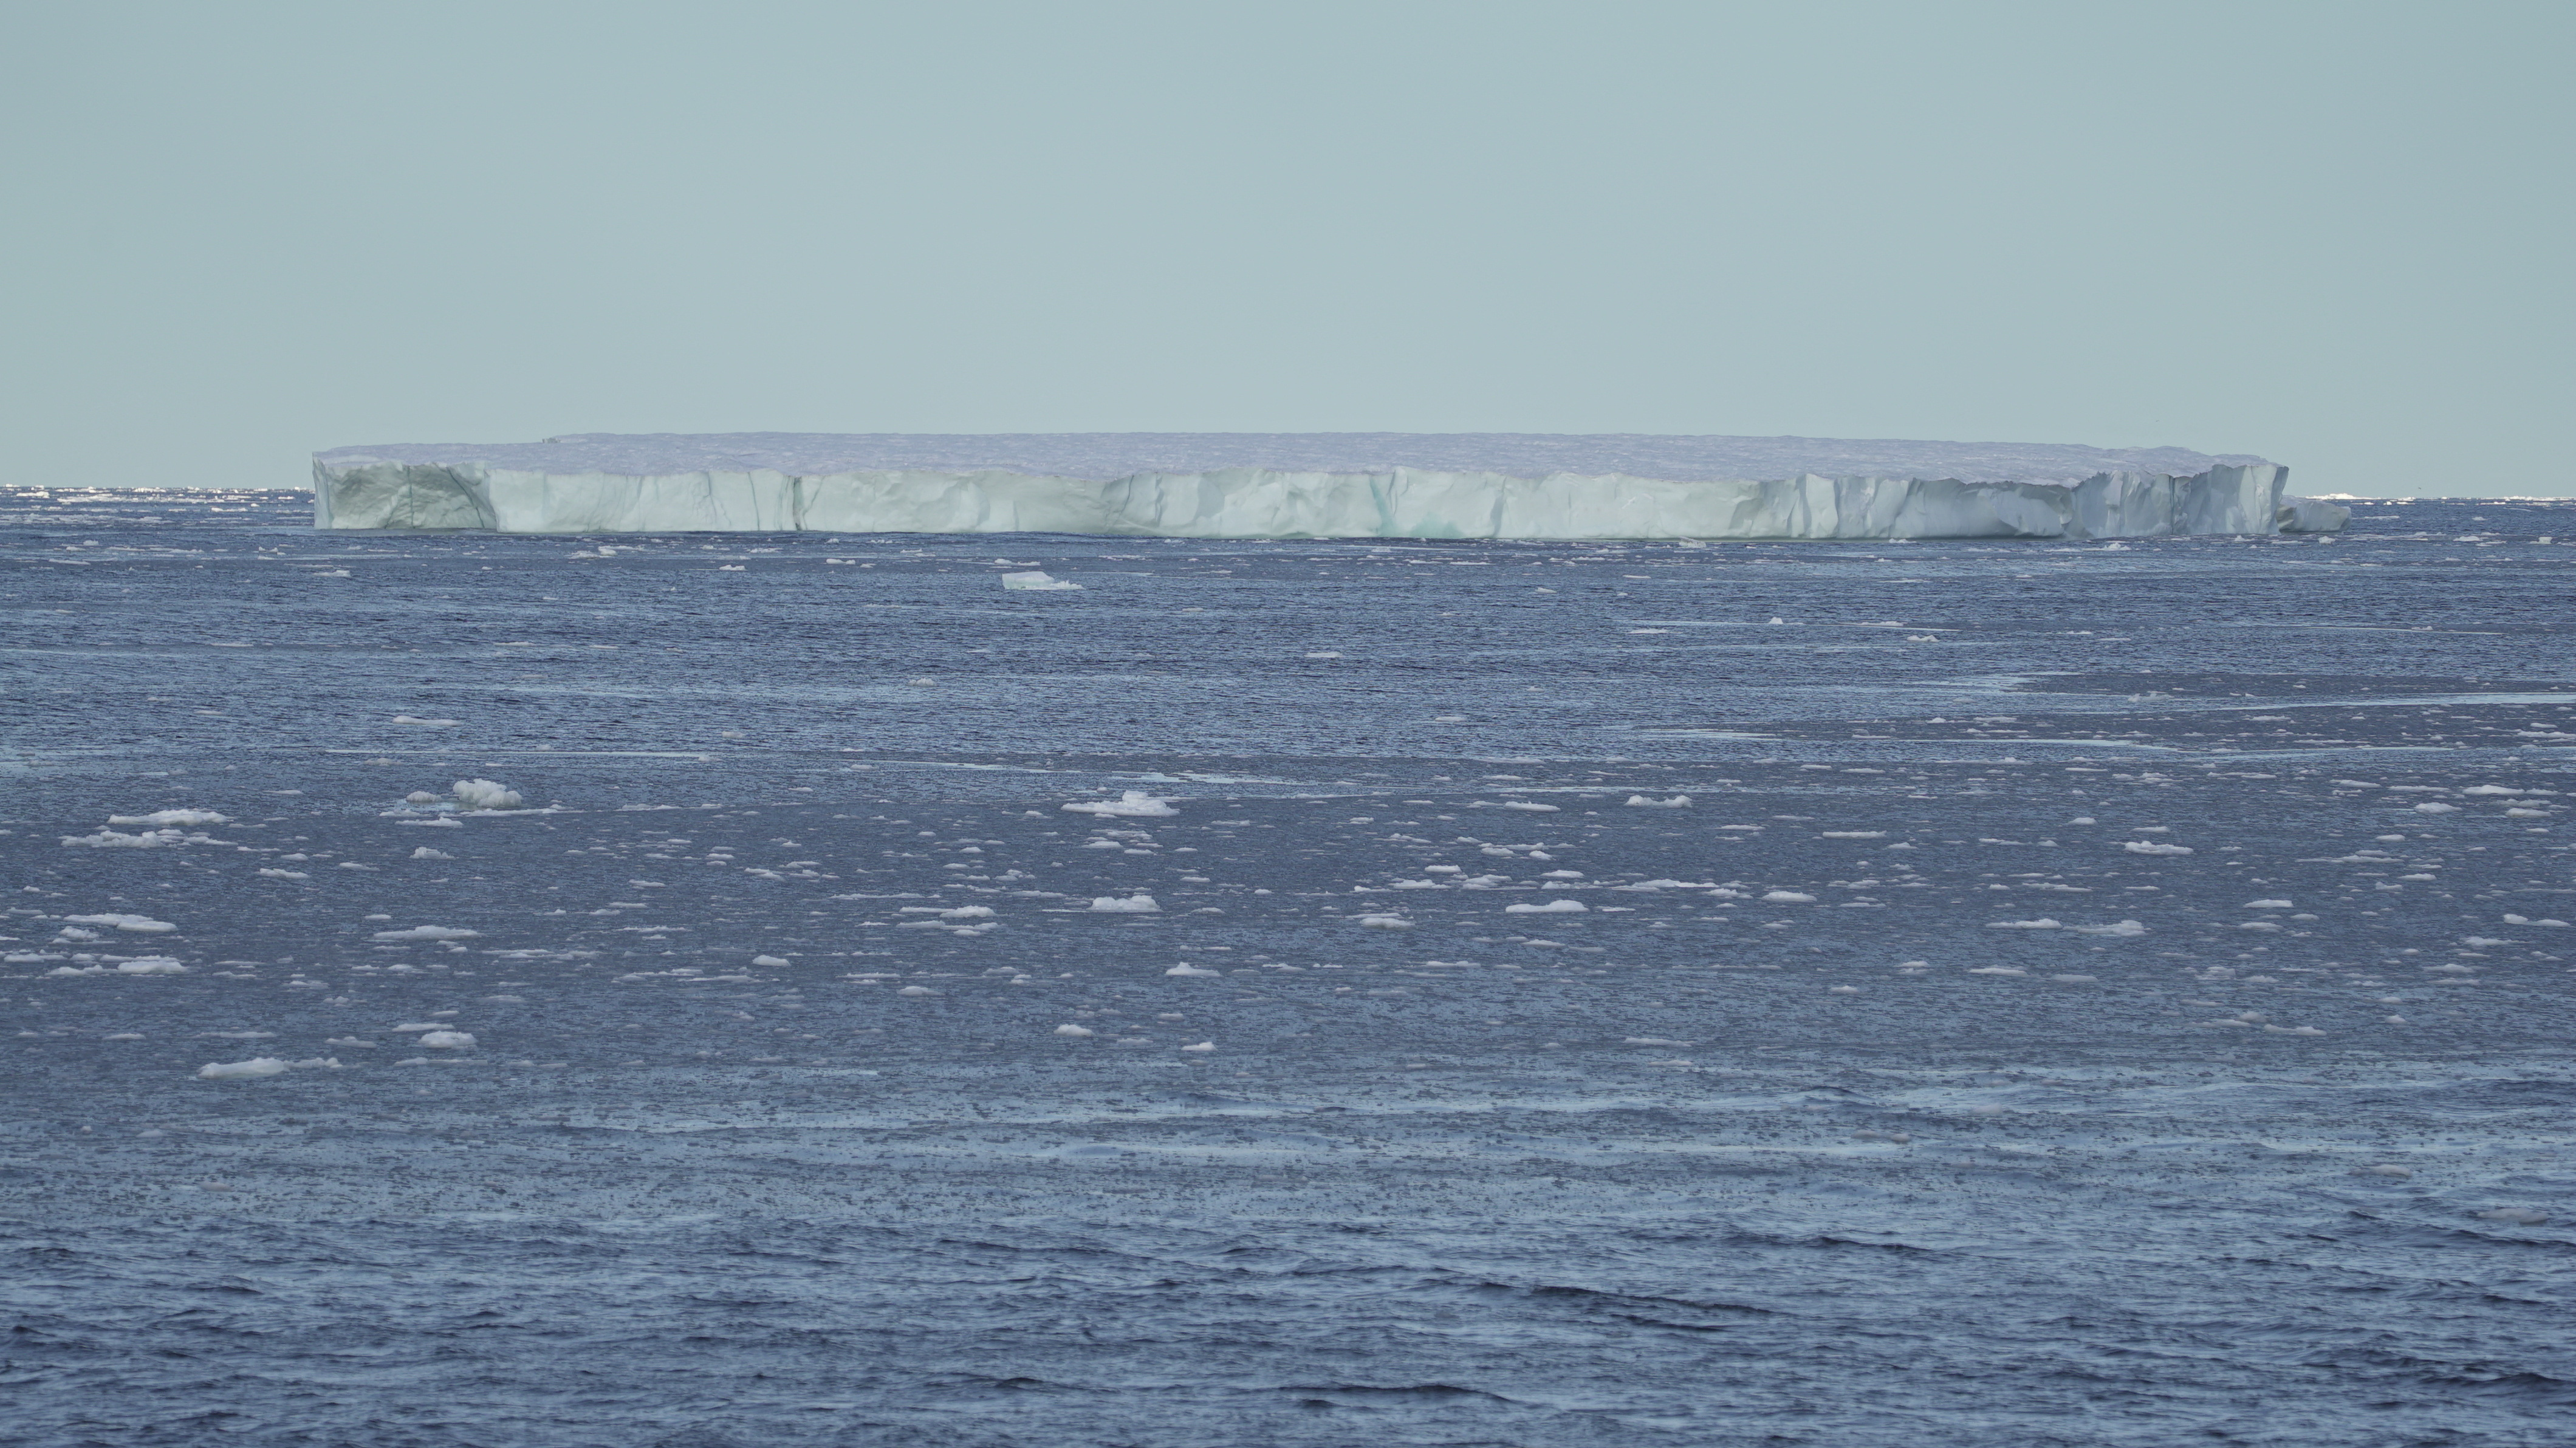 Vue générale de la première grande plaque de glace observée par l'équipage du navire Arctic Sunrise de Greenpeace dans l'océan Arctique.